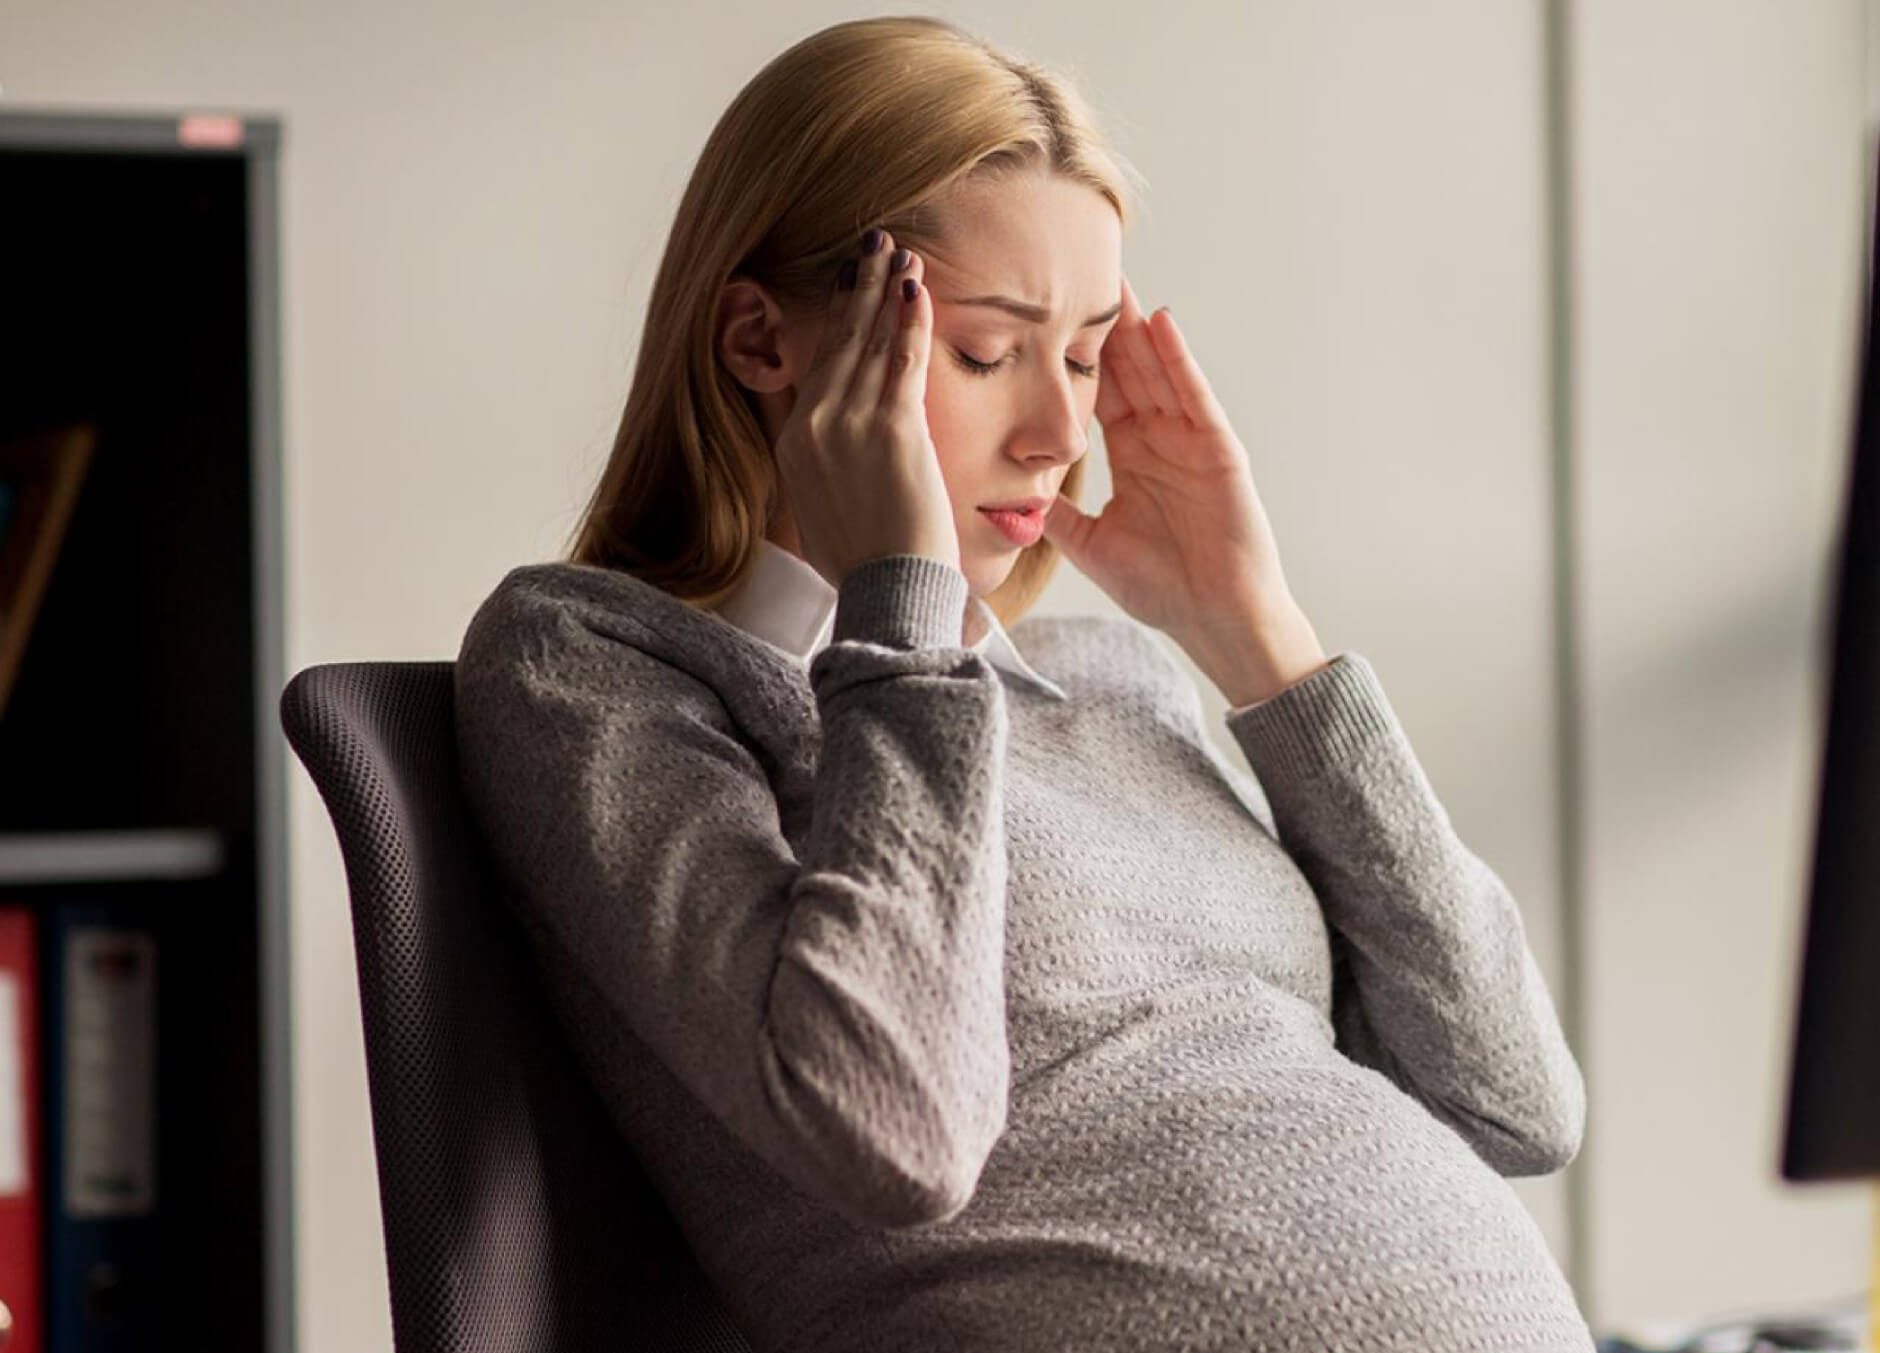 Khủng hoảng tâm lý khi mang thai - những điều tuyệt đối không nên lơ là